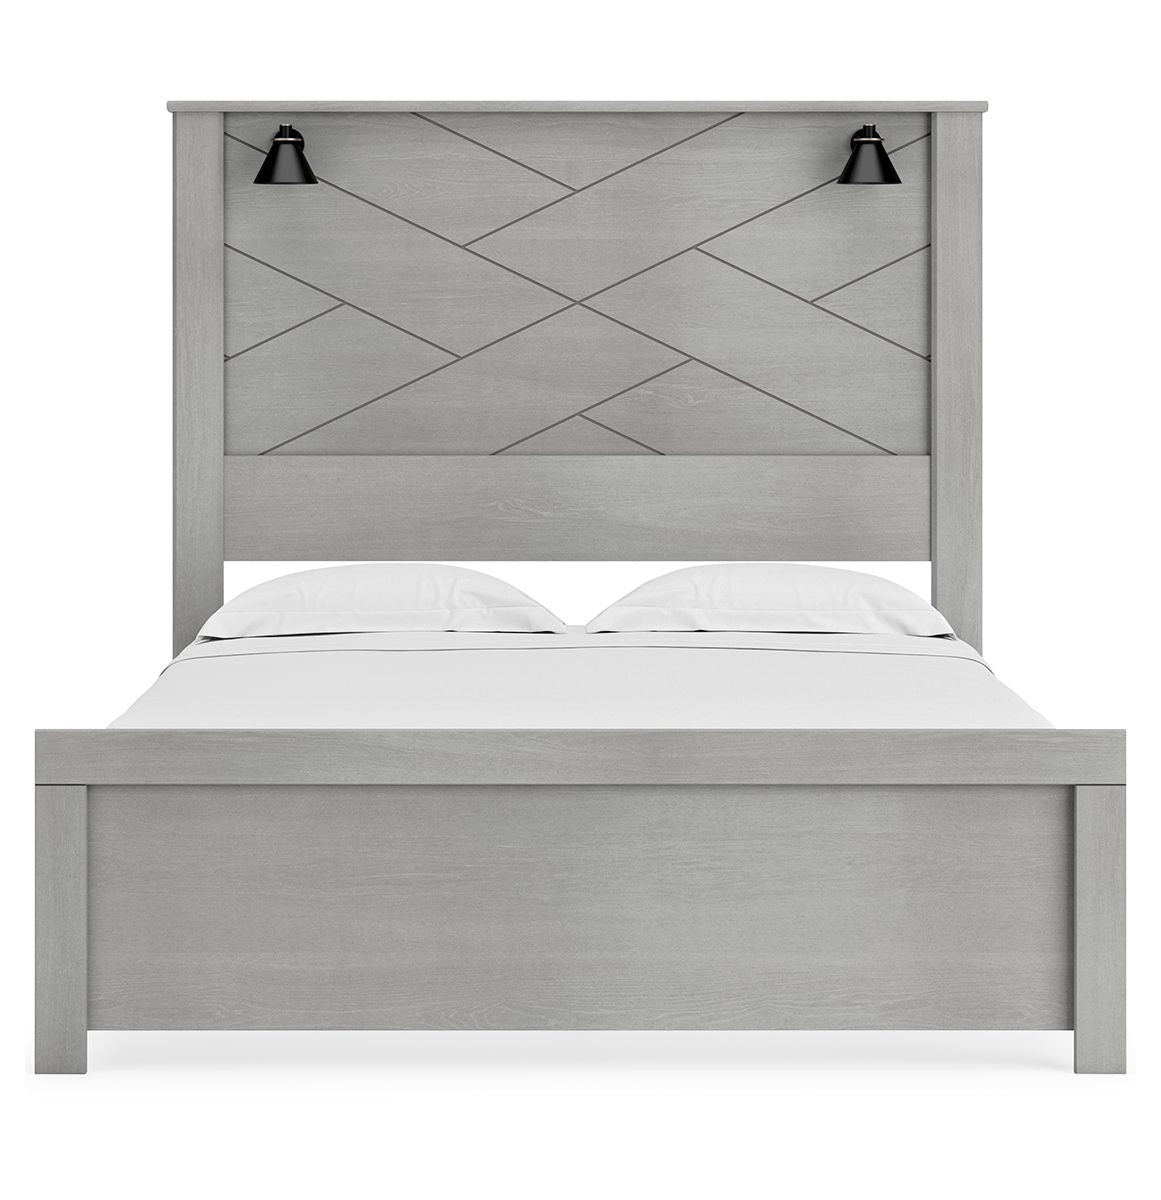 Cottonburg Queen Panel Bed